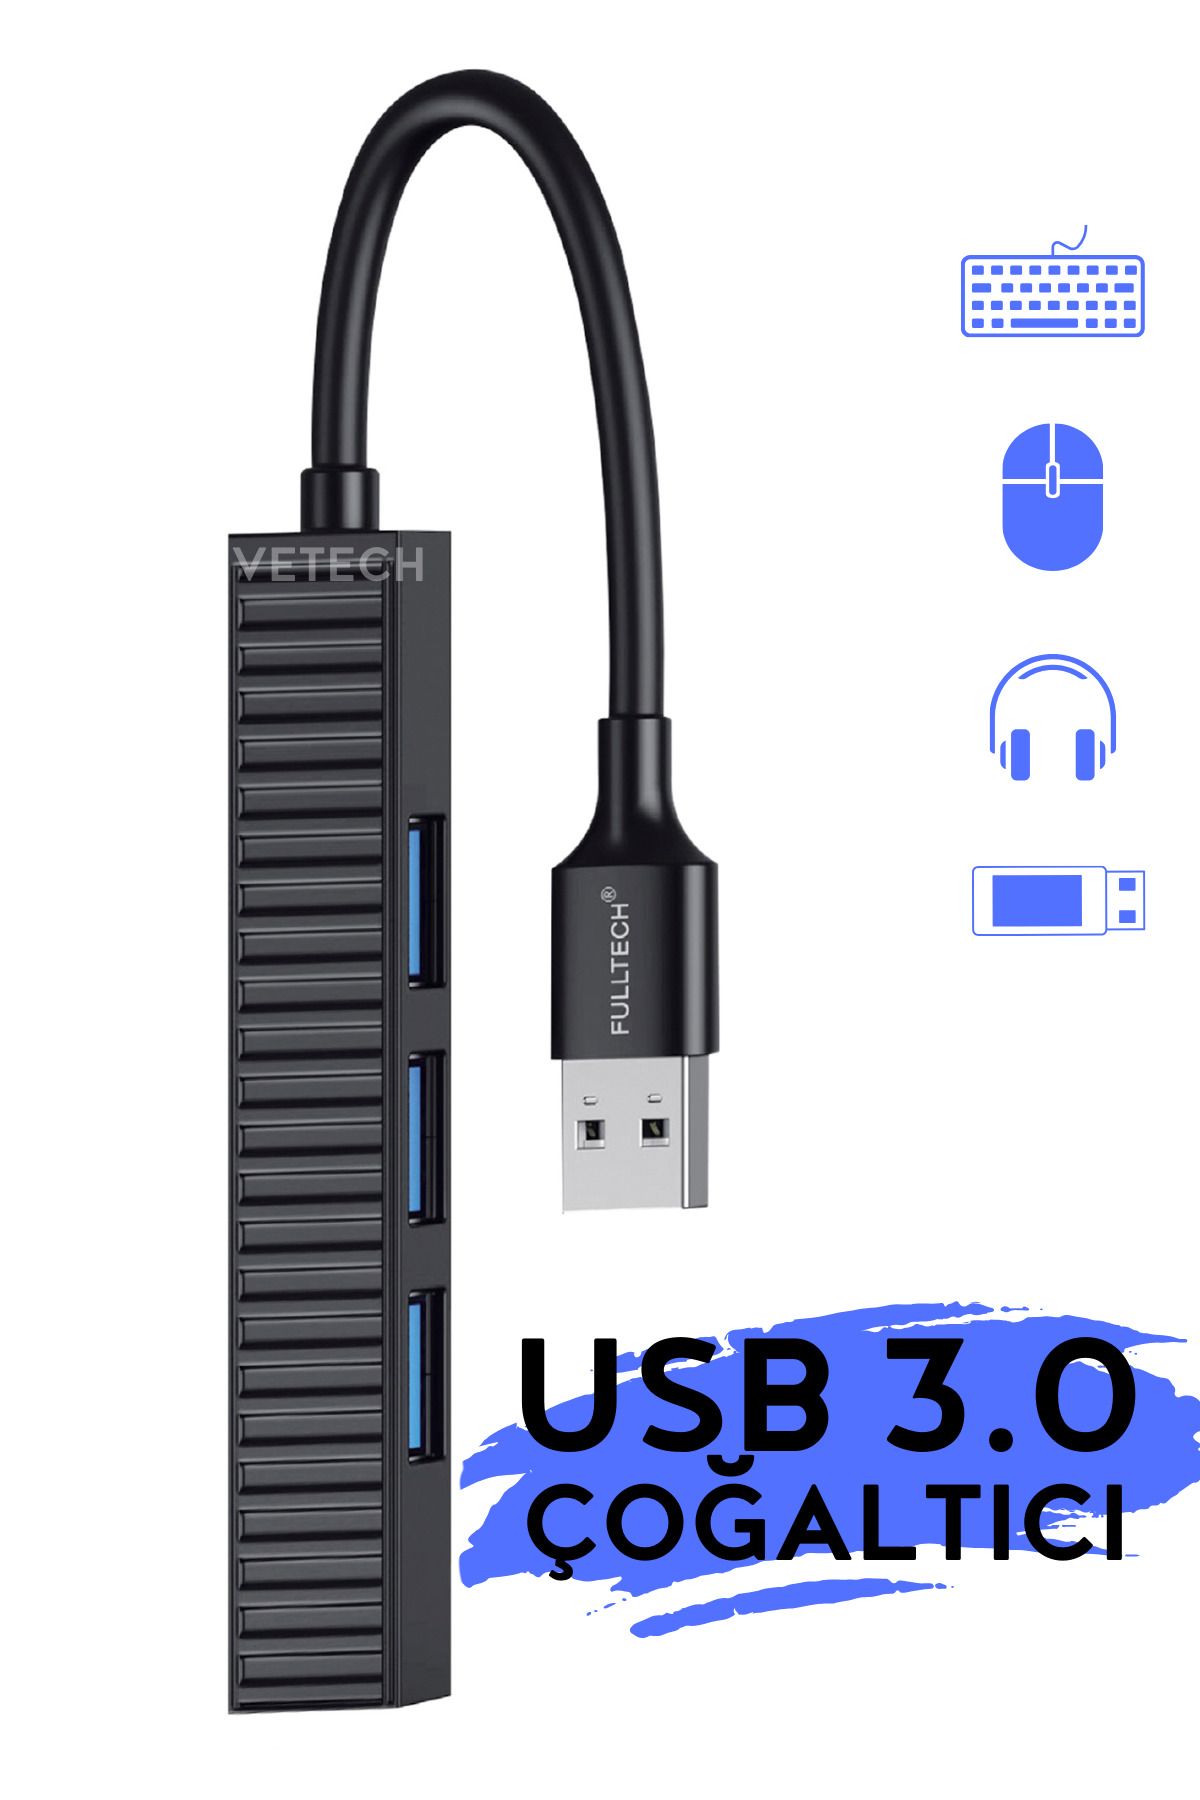 Vetech USB 3.0 Çoğaltıcı HUB 4 Port Çoklayıcı HUB Laptop / PC Uyumlu